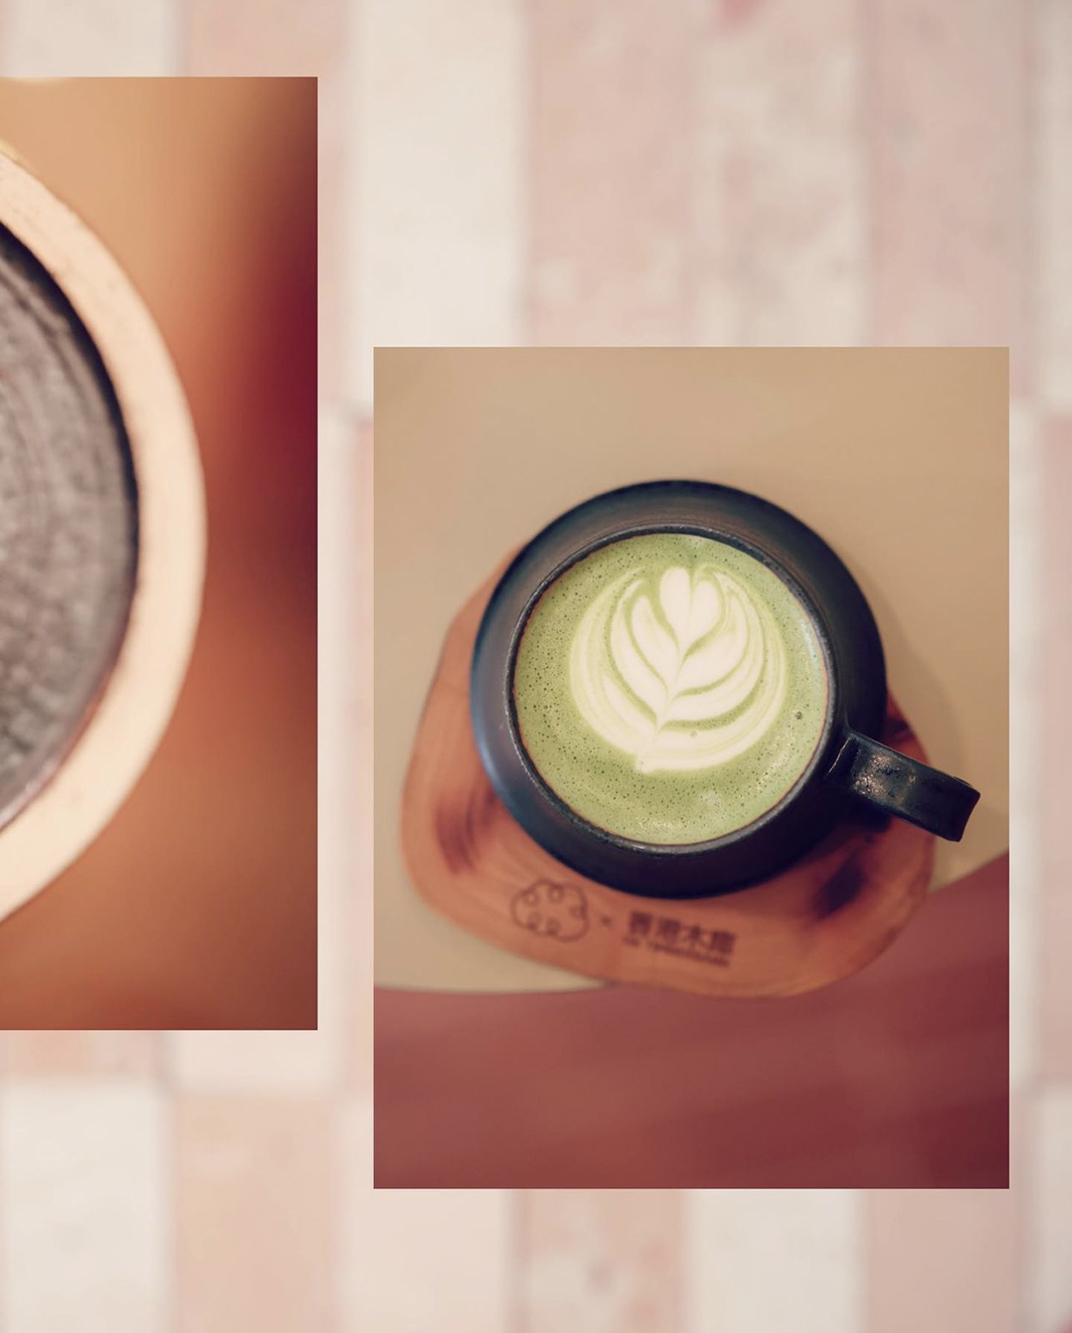 插画墙身cafe咖啡店Creo by Brentwood 香港 北京 上海 成都 武汉 杭州 广州 澳门 logo设计 vi设计 空间设计